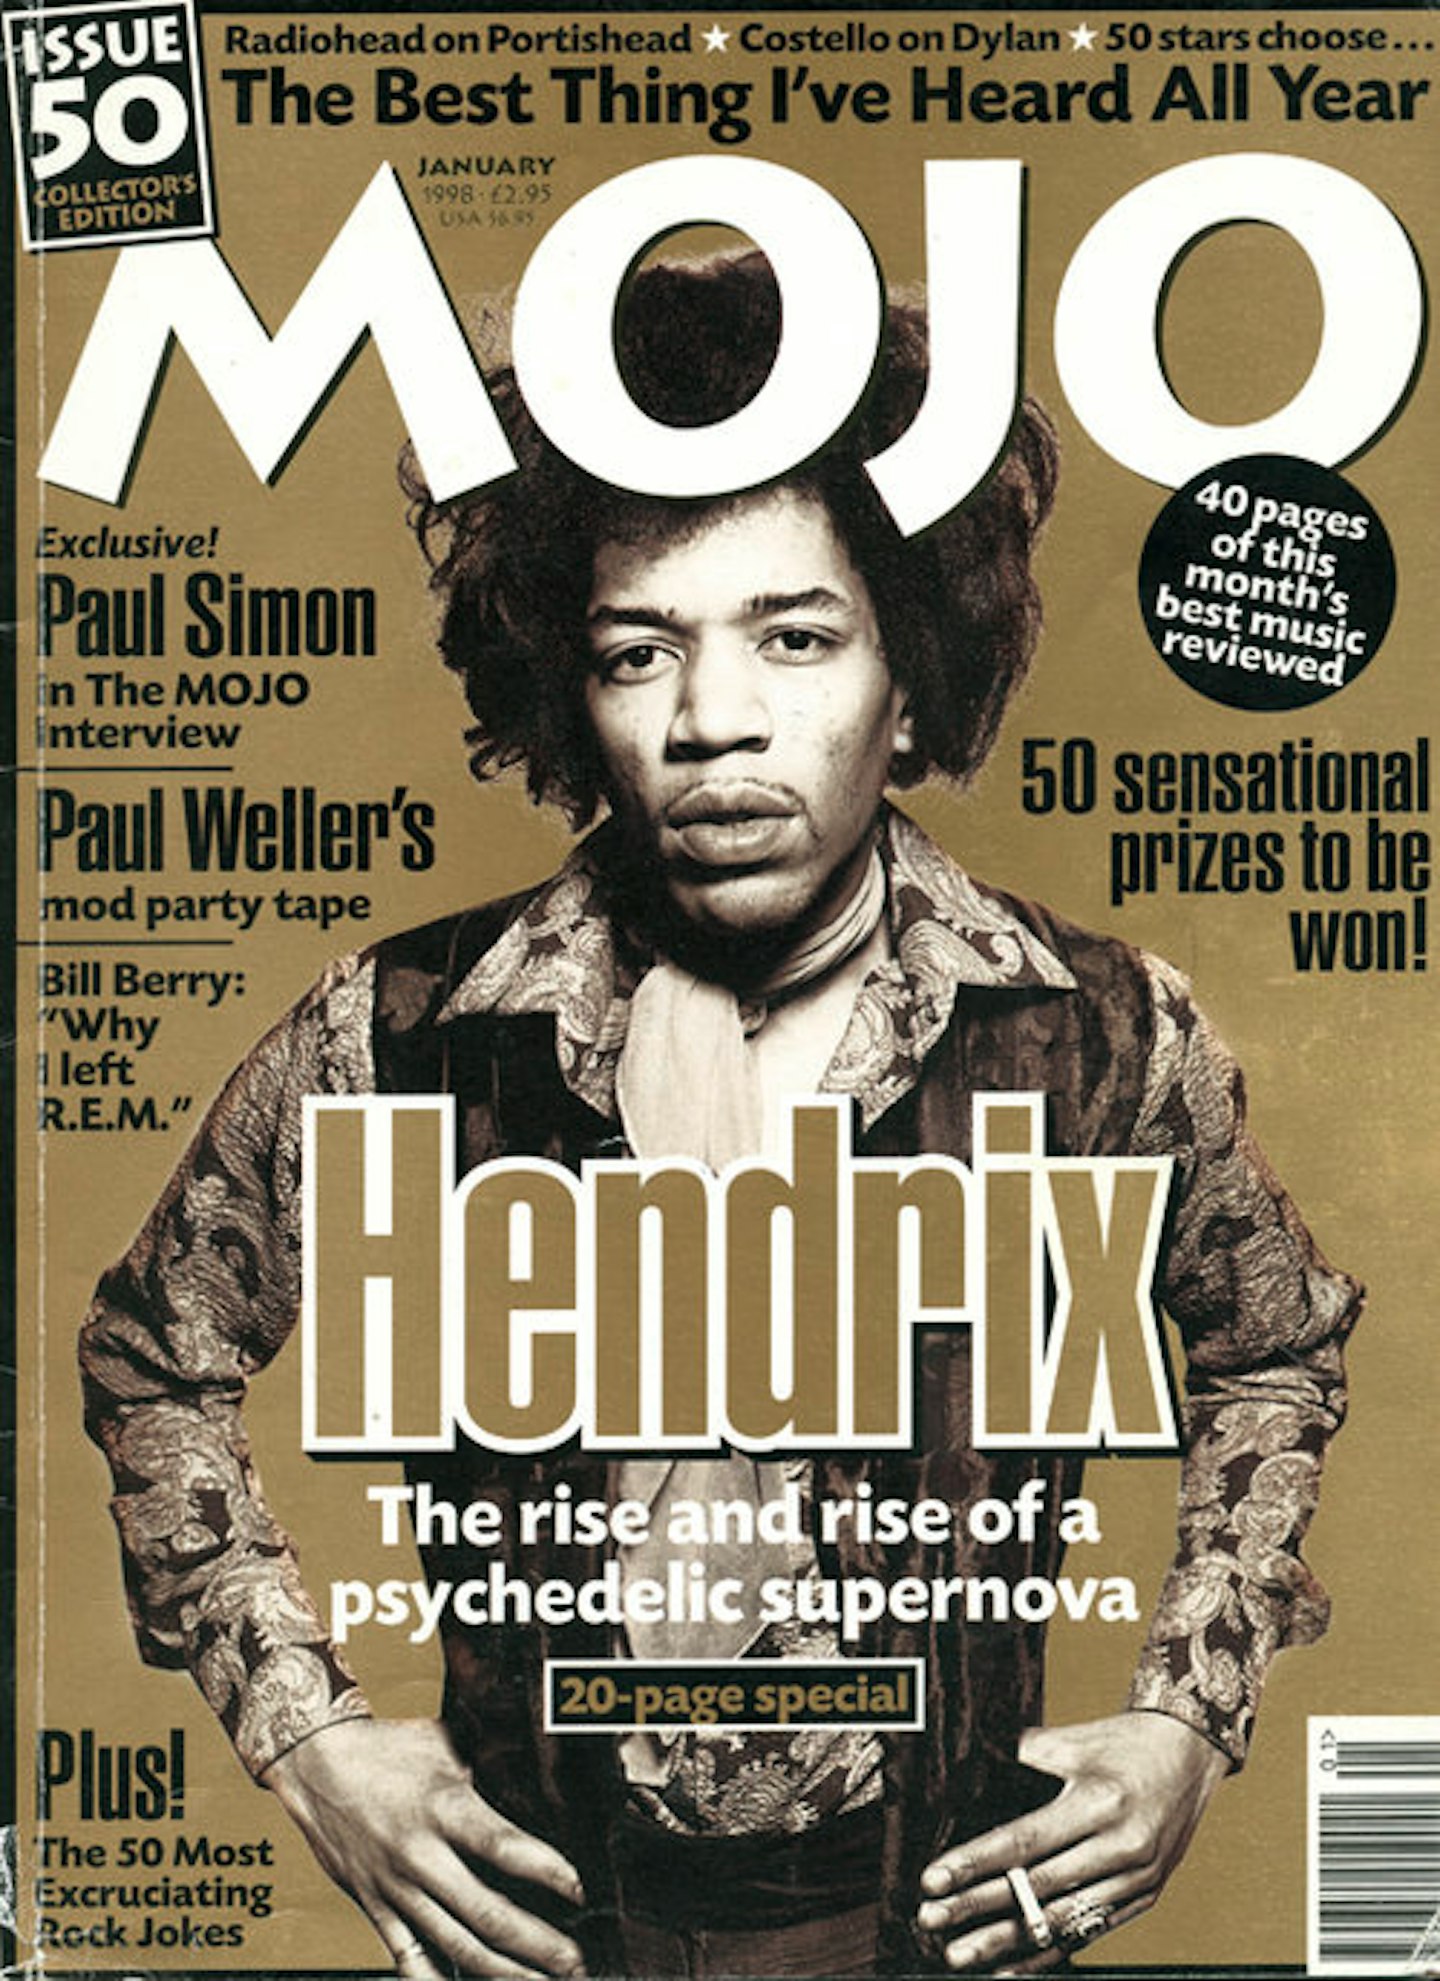 MOJO Issue 50 / January 1998